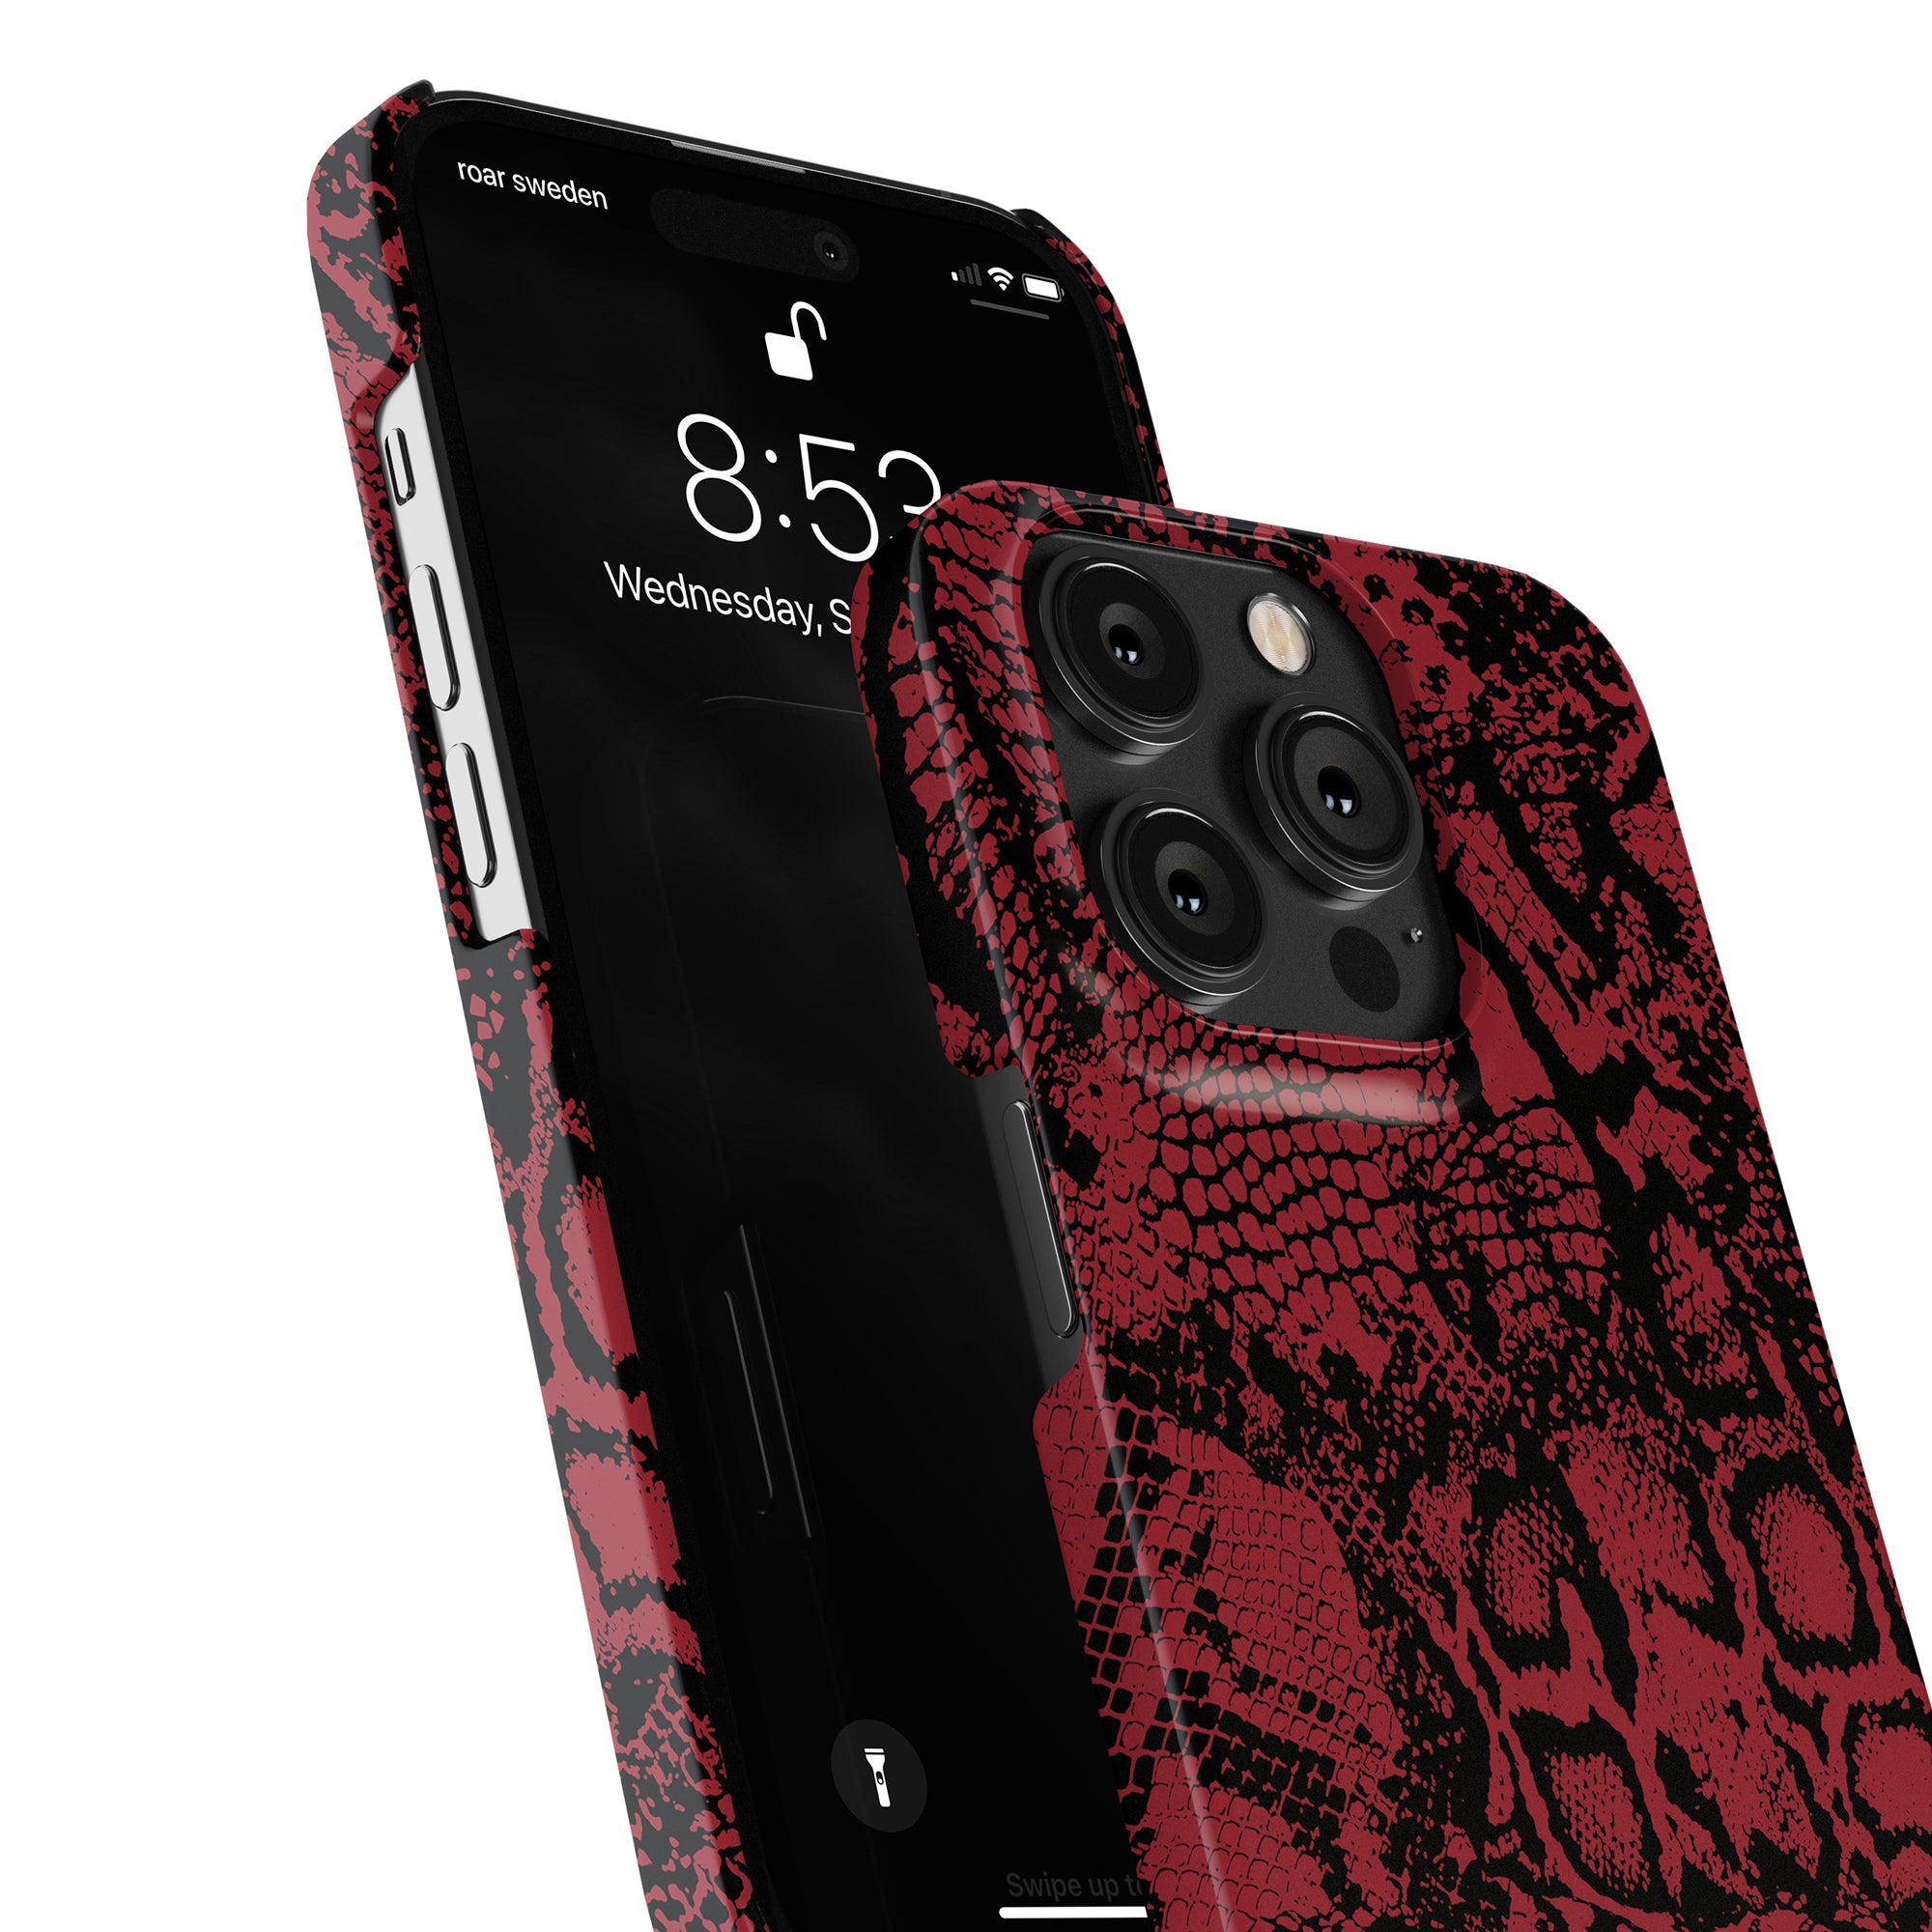 Printeers Viper Slim Fodral - Röd python skin iPhone 11 Pro fodral designad för ultimat skydd och stil. Perfekt mobilaccessoar.